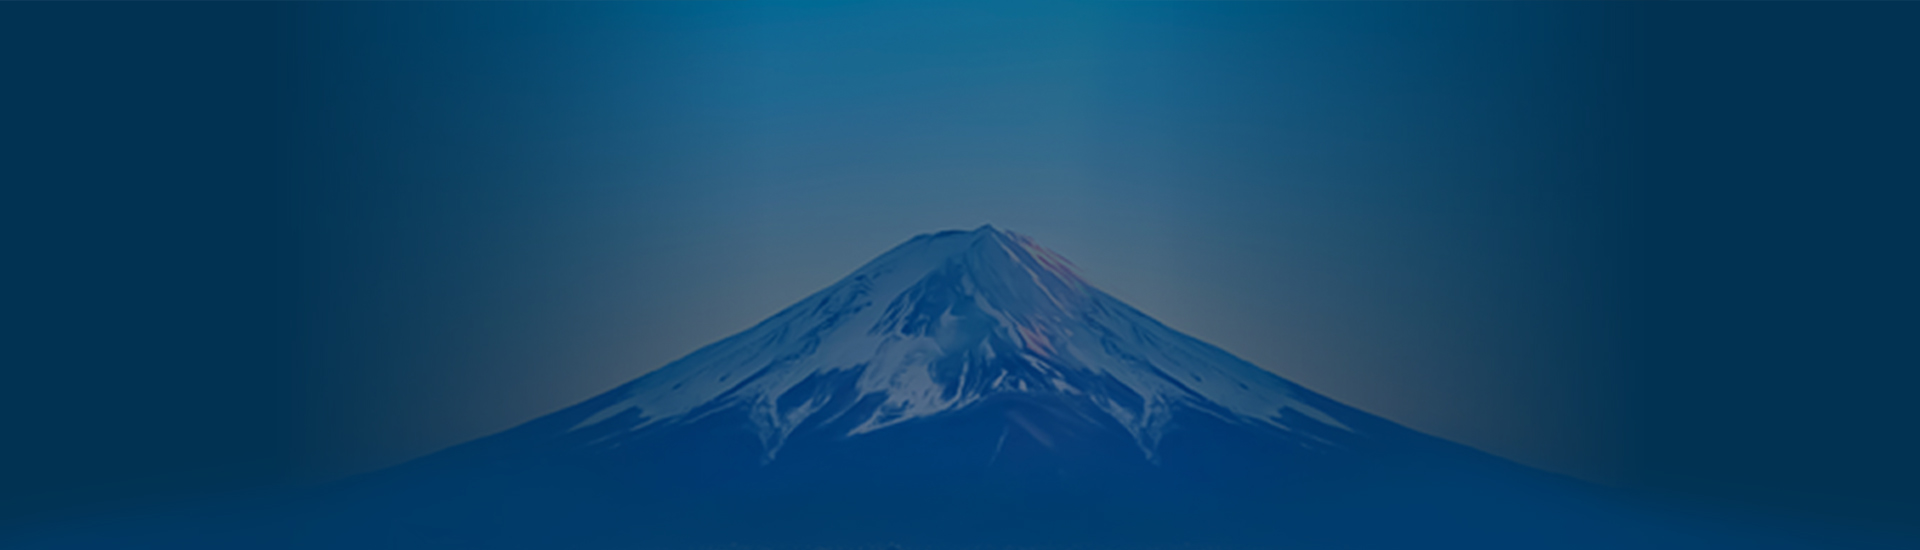 Monte Fuji em fundo azul